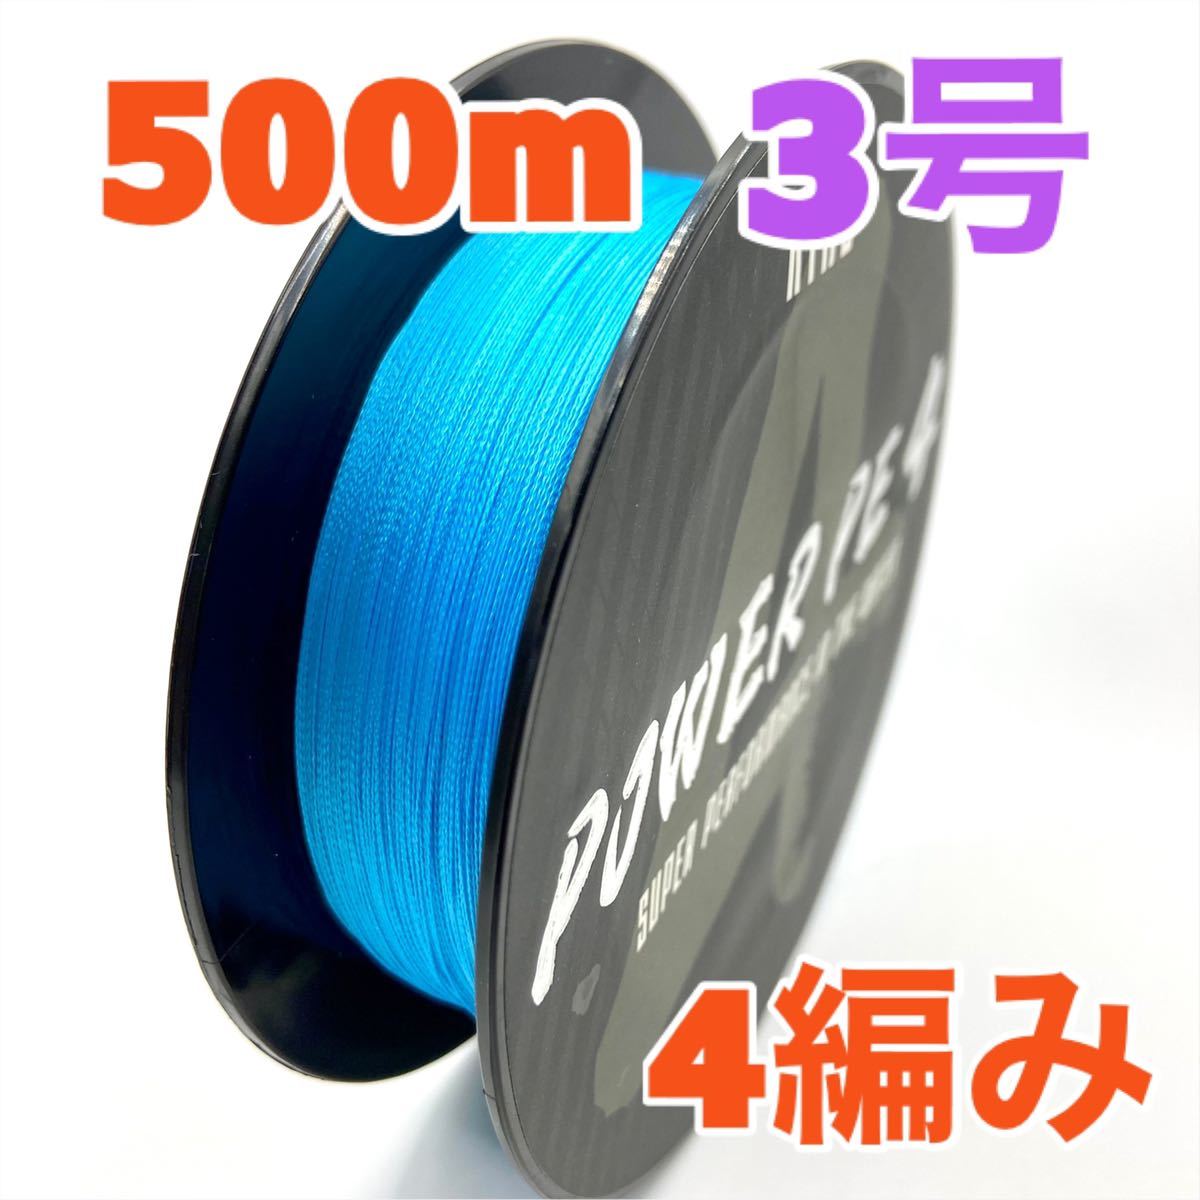 PE линия 4 плетеный 500m 3 номер синий blue высокая интенсивность 